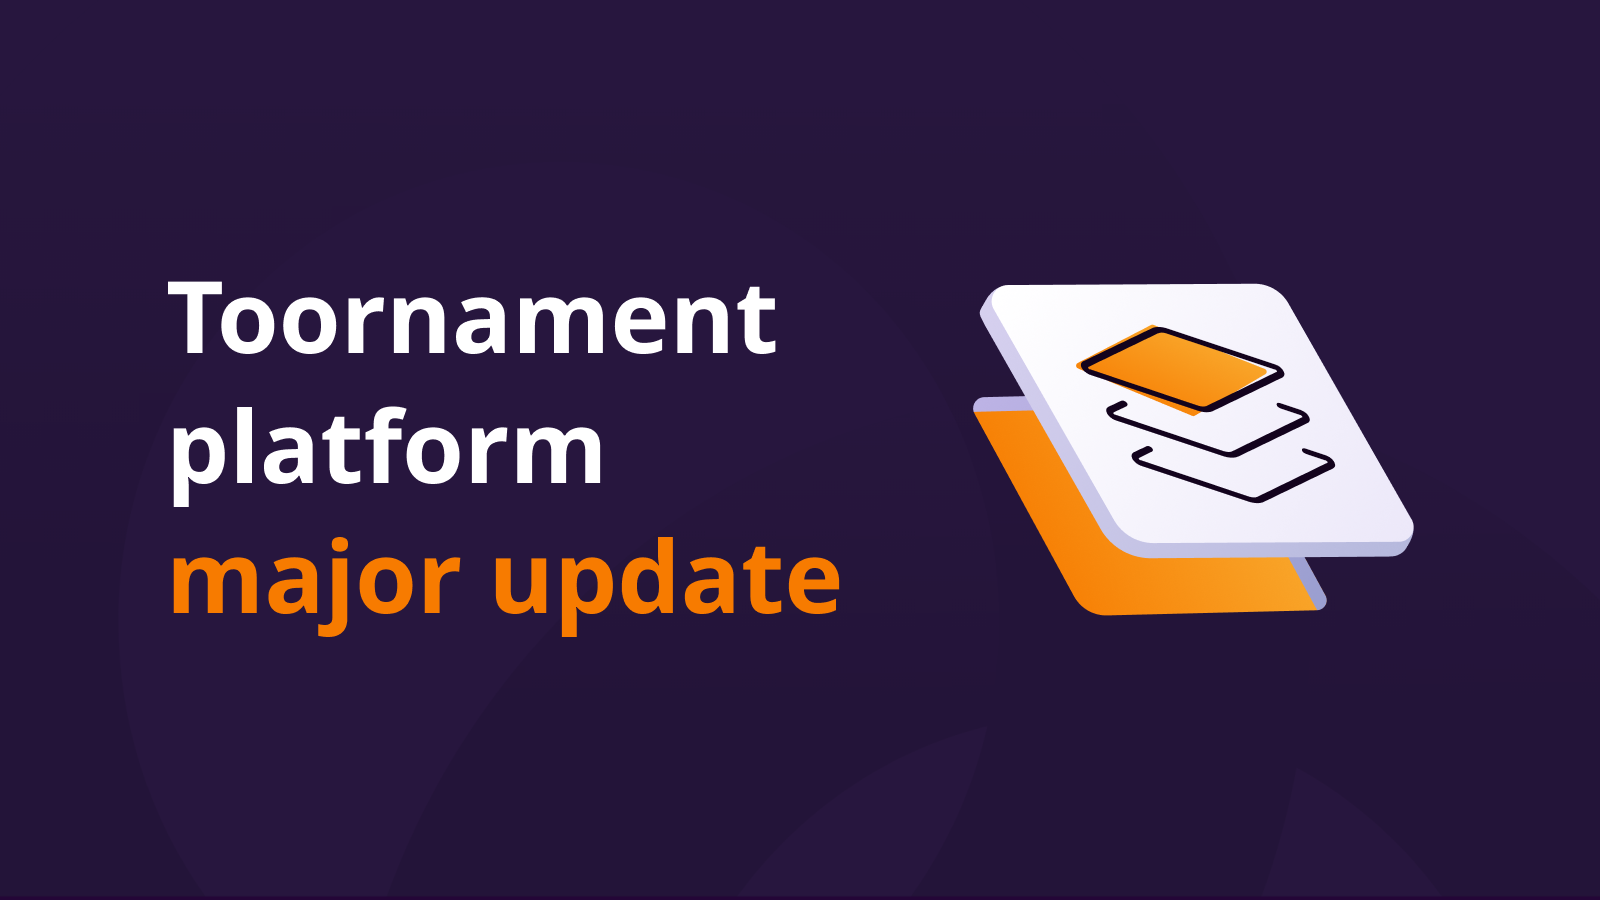 Major update of the Toornament Platform